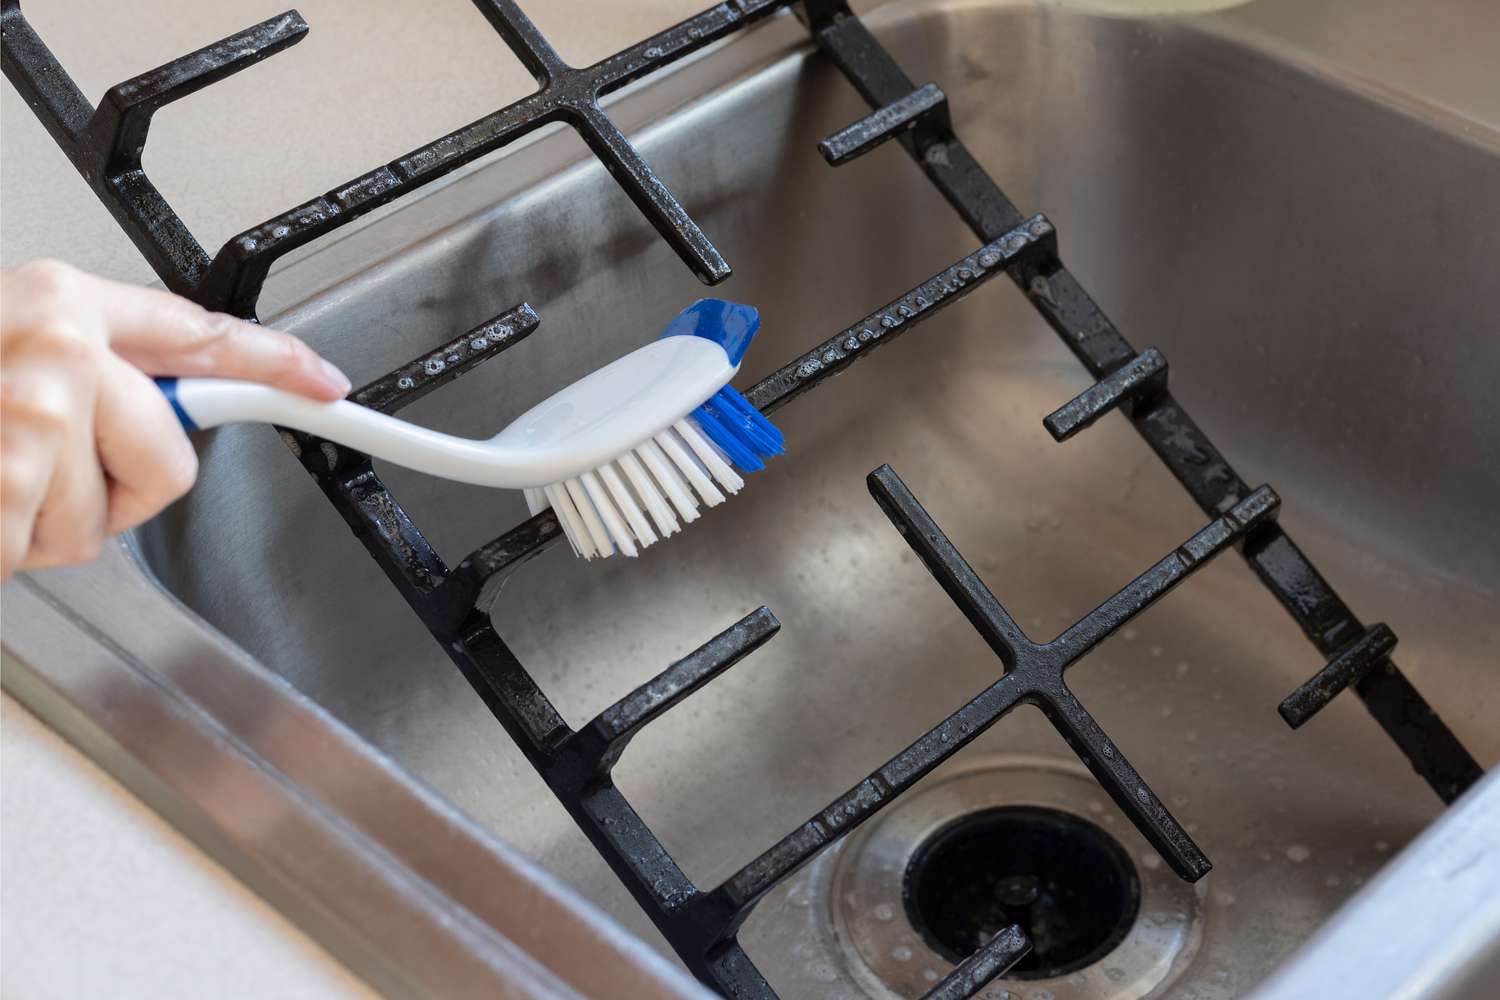 Escova de nylon com cerdas duras limpando as grelhas do fogão de ferro fundido